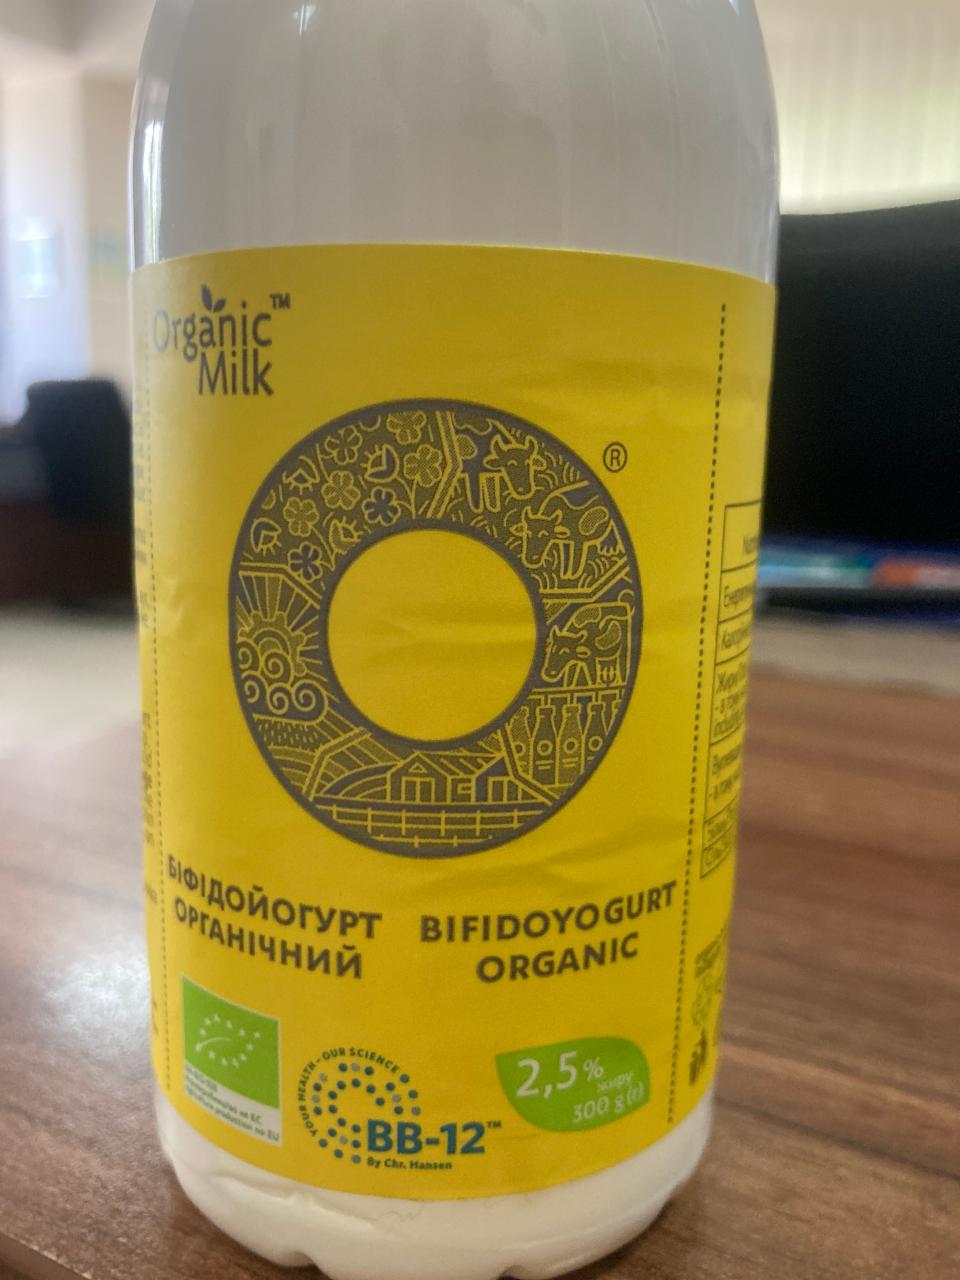 Фото - Біфодойогурт органічний 2.5% Organic Milk